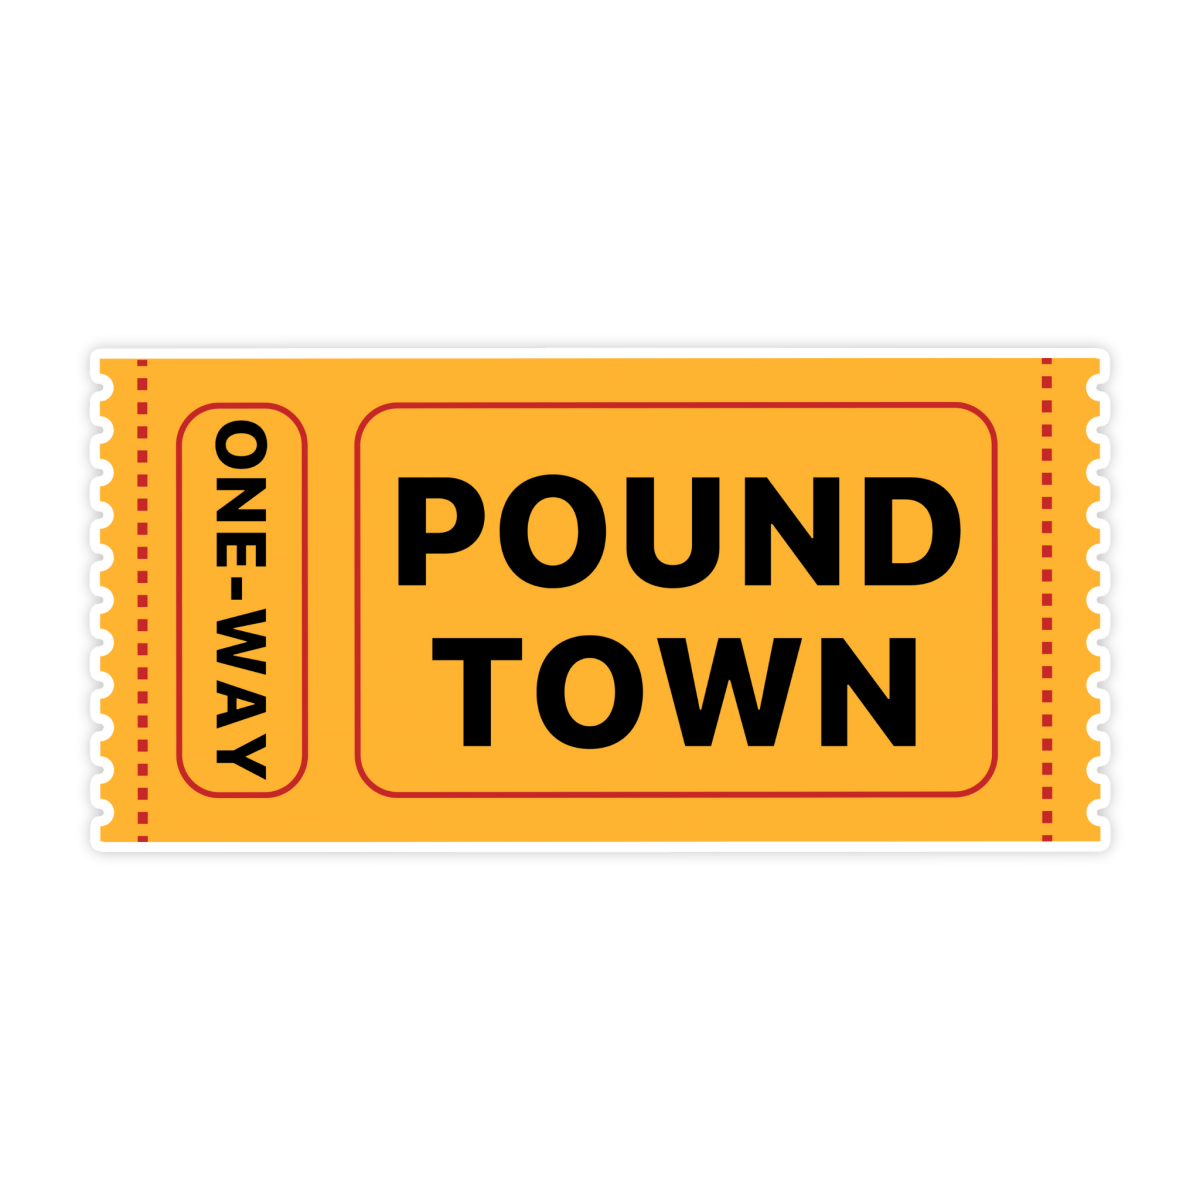 Ticket To Pound Town Sticker - stickerbullTicket To Pound Town StickerRetail StickerstickerbullstickerbullSage_PoundTown [#177]Ticket To Pound Town Sticker